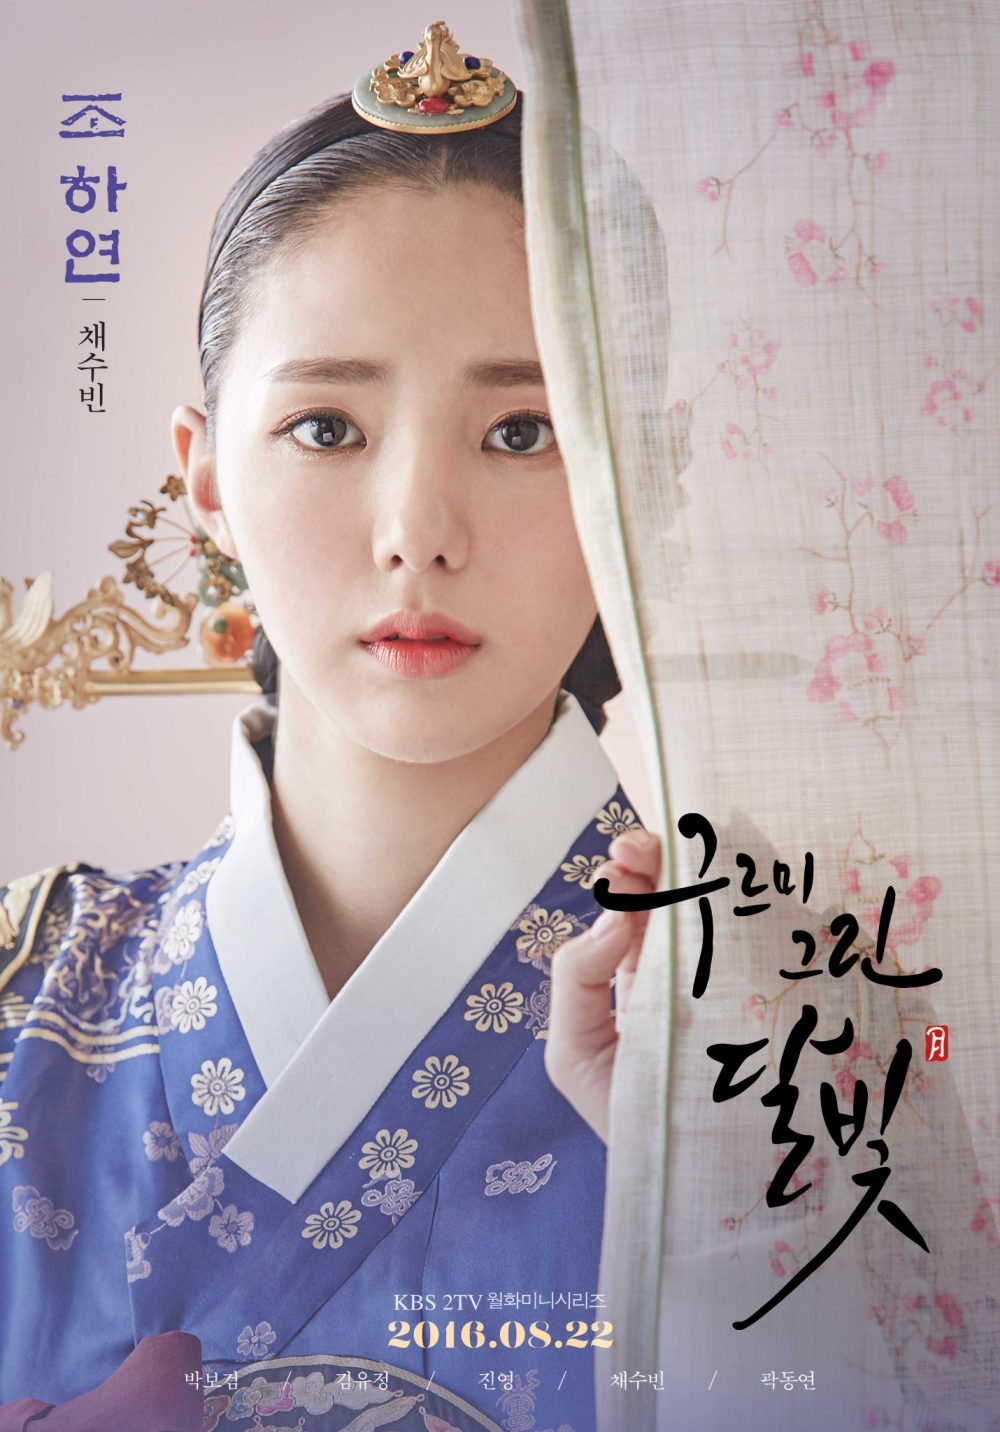 Phim Chae Soo Bin đóng: Mây họa ánh trăng - Love in the Moonlight (2016)